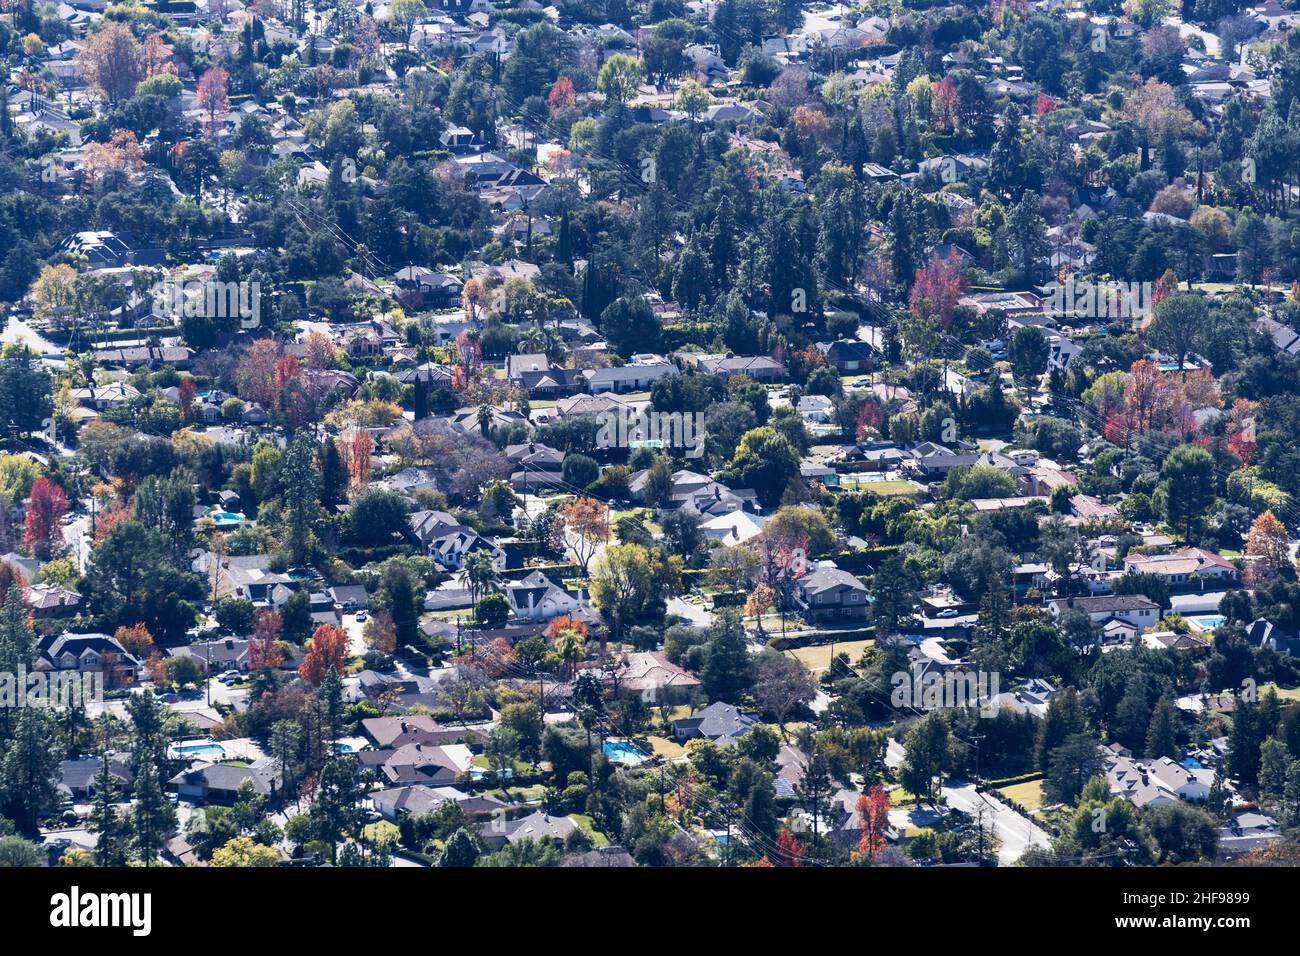 Vista de los barrios de La Canada Flintridge cerca de Glendale y Los Angeles, California. Foto tomada del Monte Lukens en las Montañas de San Gabriel. Foto de stock